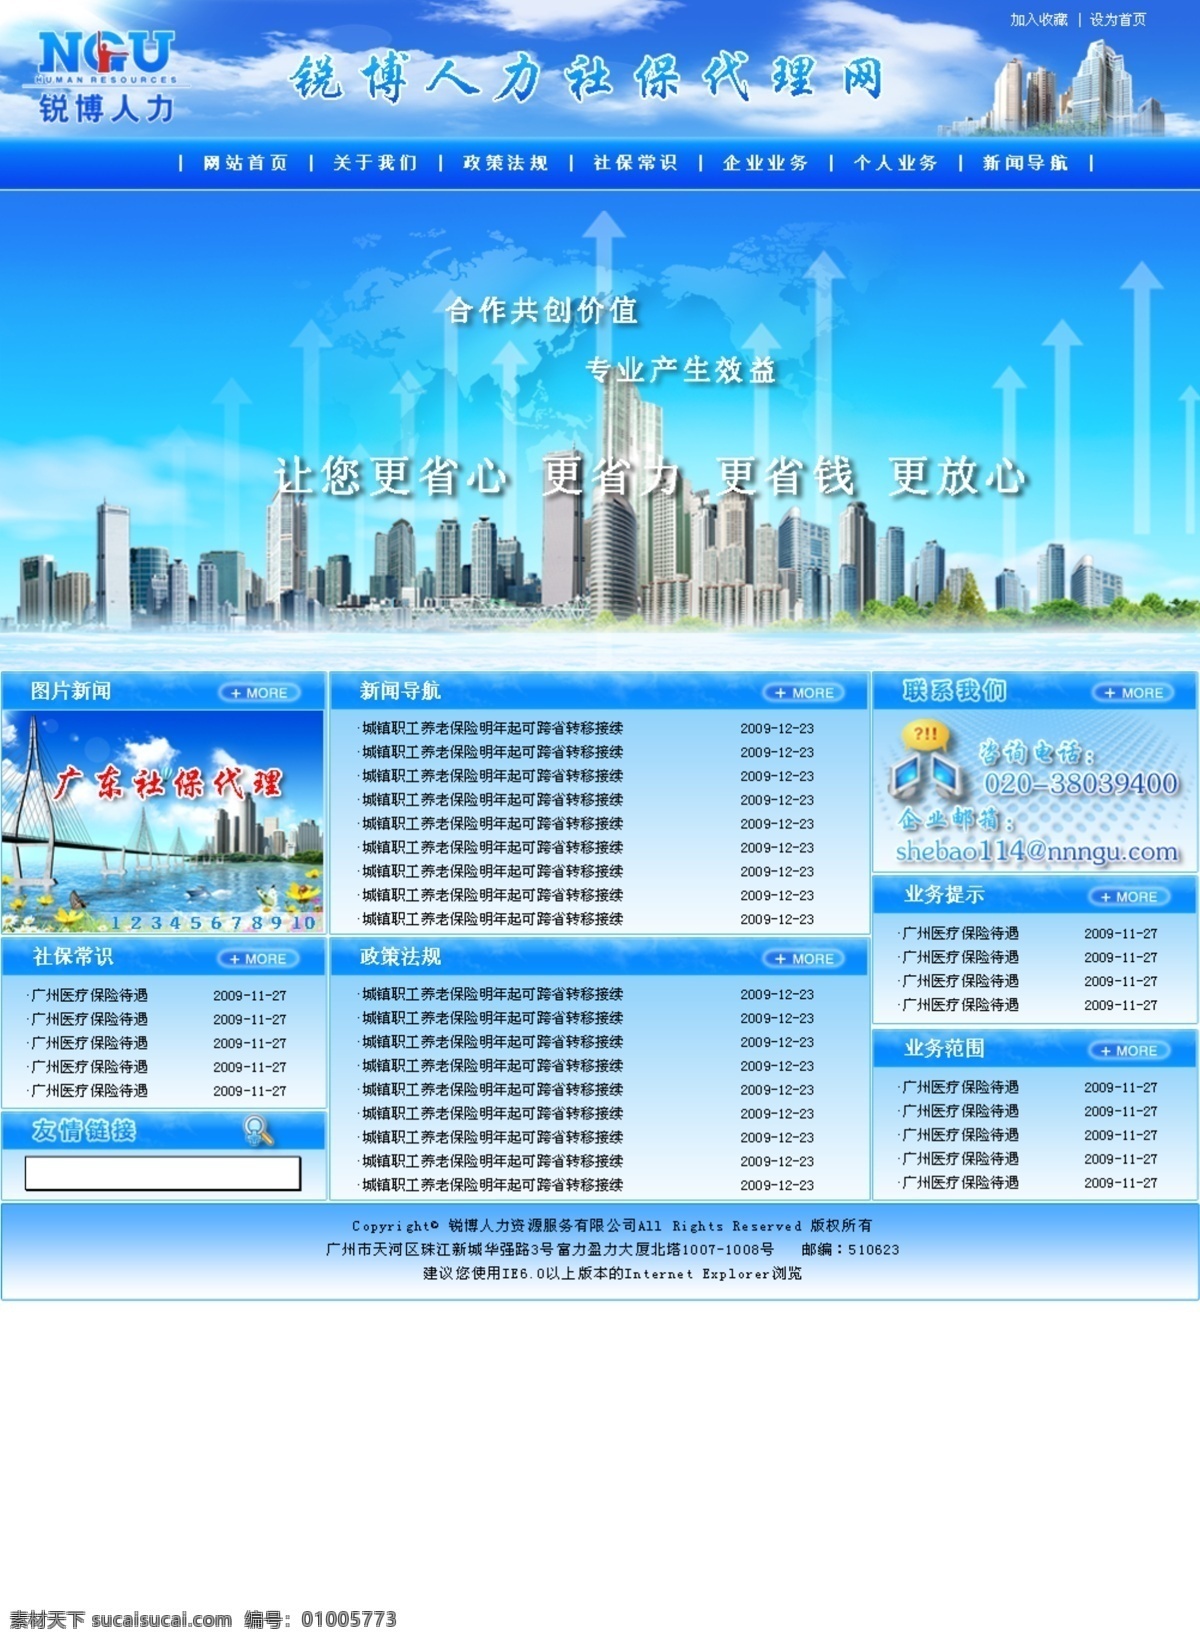 人力资源 网页设计 蓝色模板 网页排版 蓝色风格 中文模板 网页模板 源文件